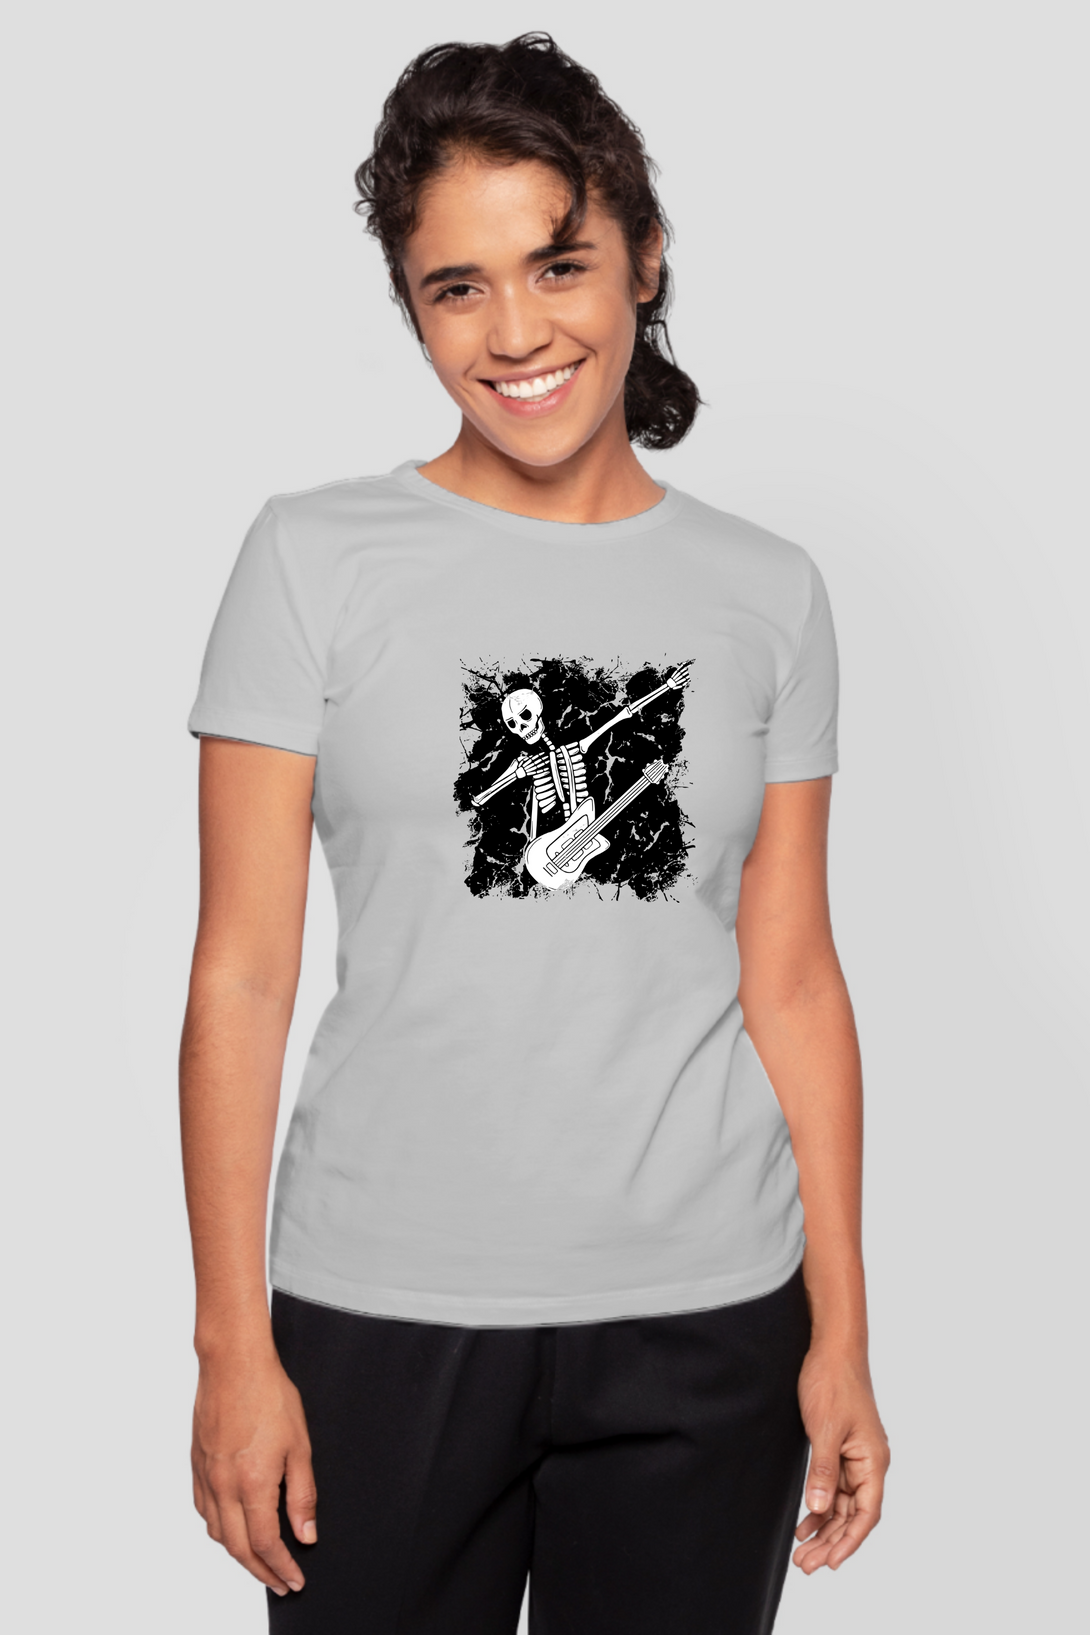 Dabbing Guitarist Skeleton Printed T-Shirt For Women - WowWaves - 7